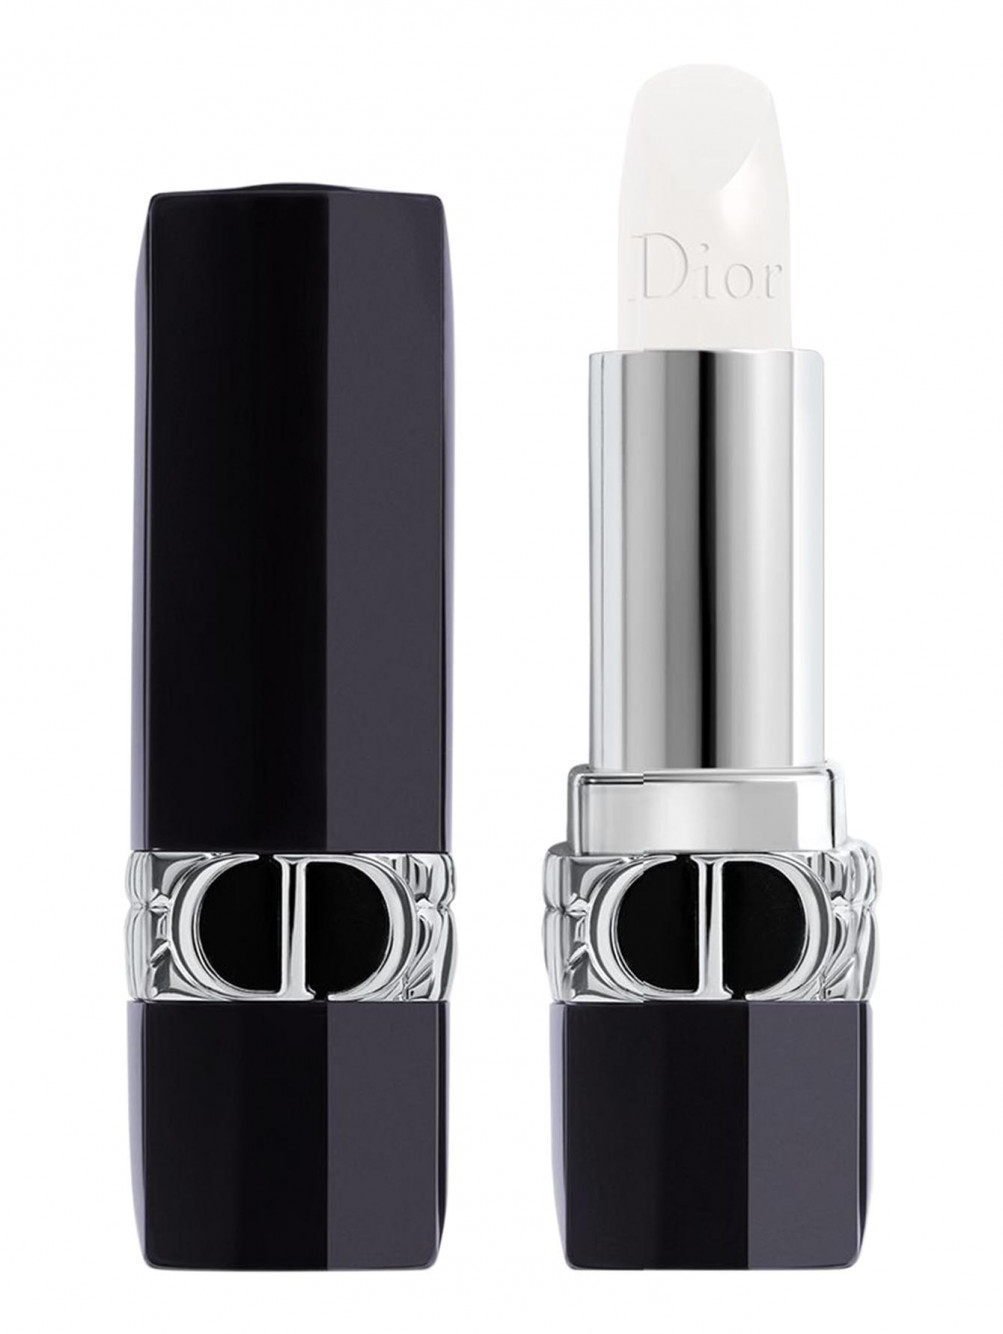 Помада-бальзам для губ Rouge Dior Balm, 100 Естественный, 3,5 г - Общий вид